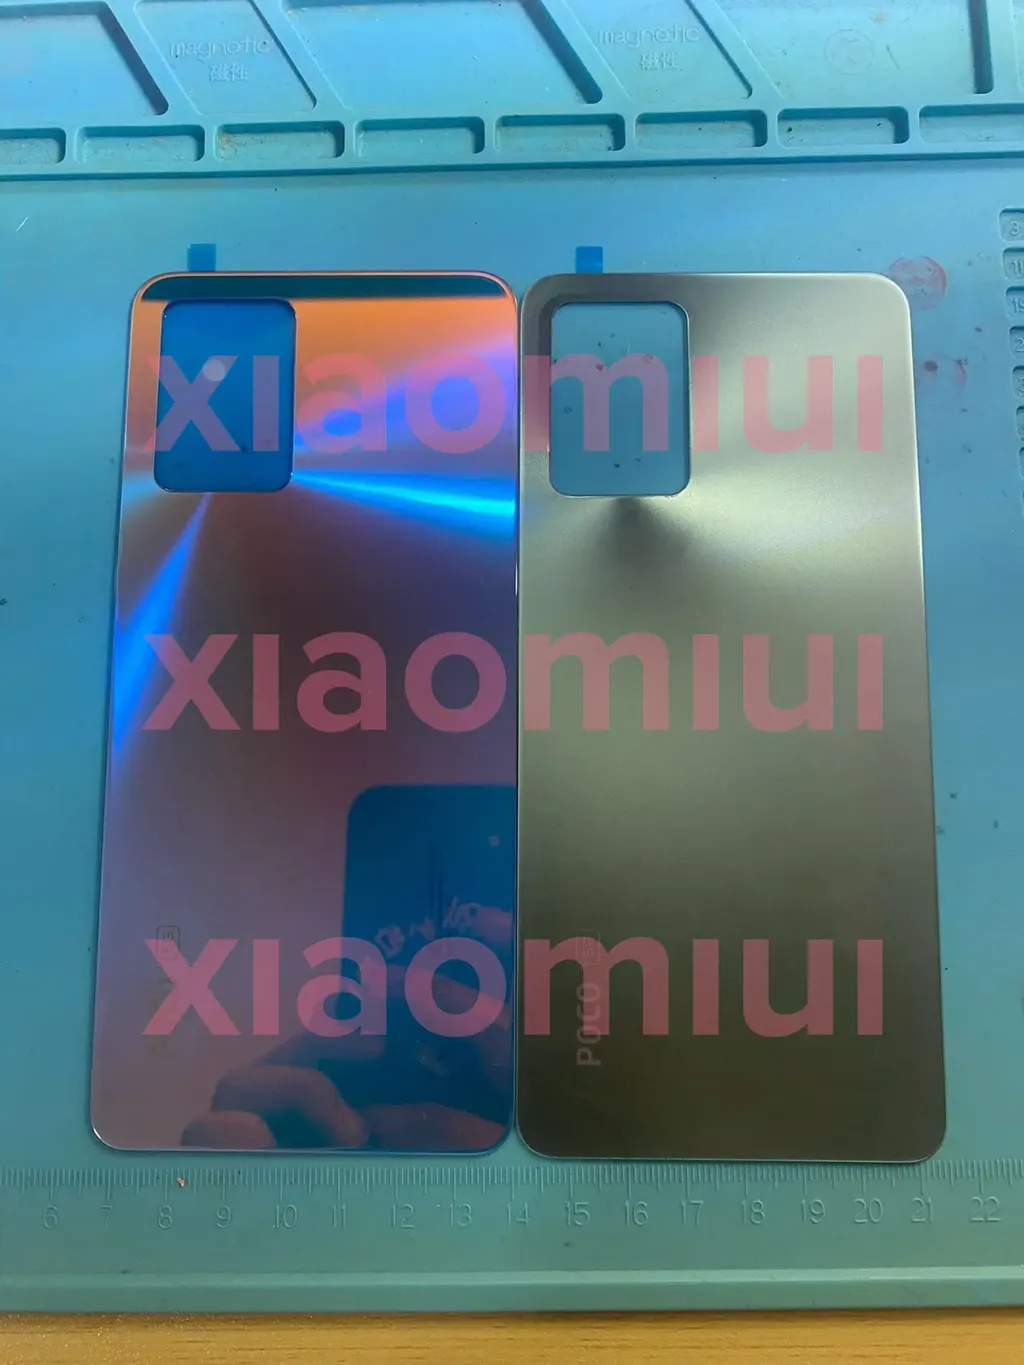 Aparelho poderá ter diversas opções de cores e visual semelhante ao Redmi K40s (Imagem: Xiaomiui)